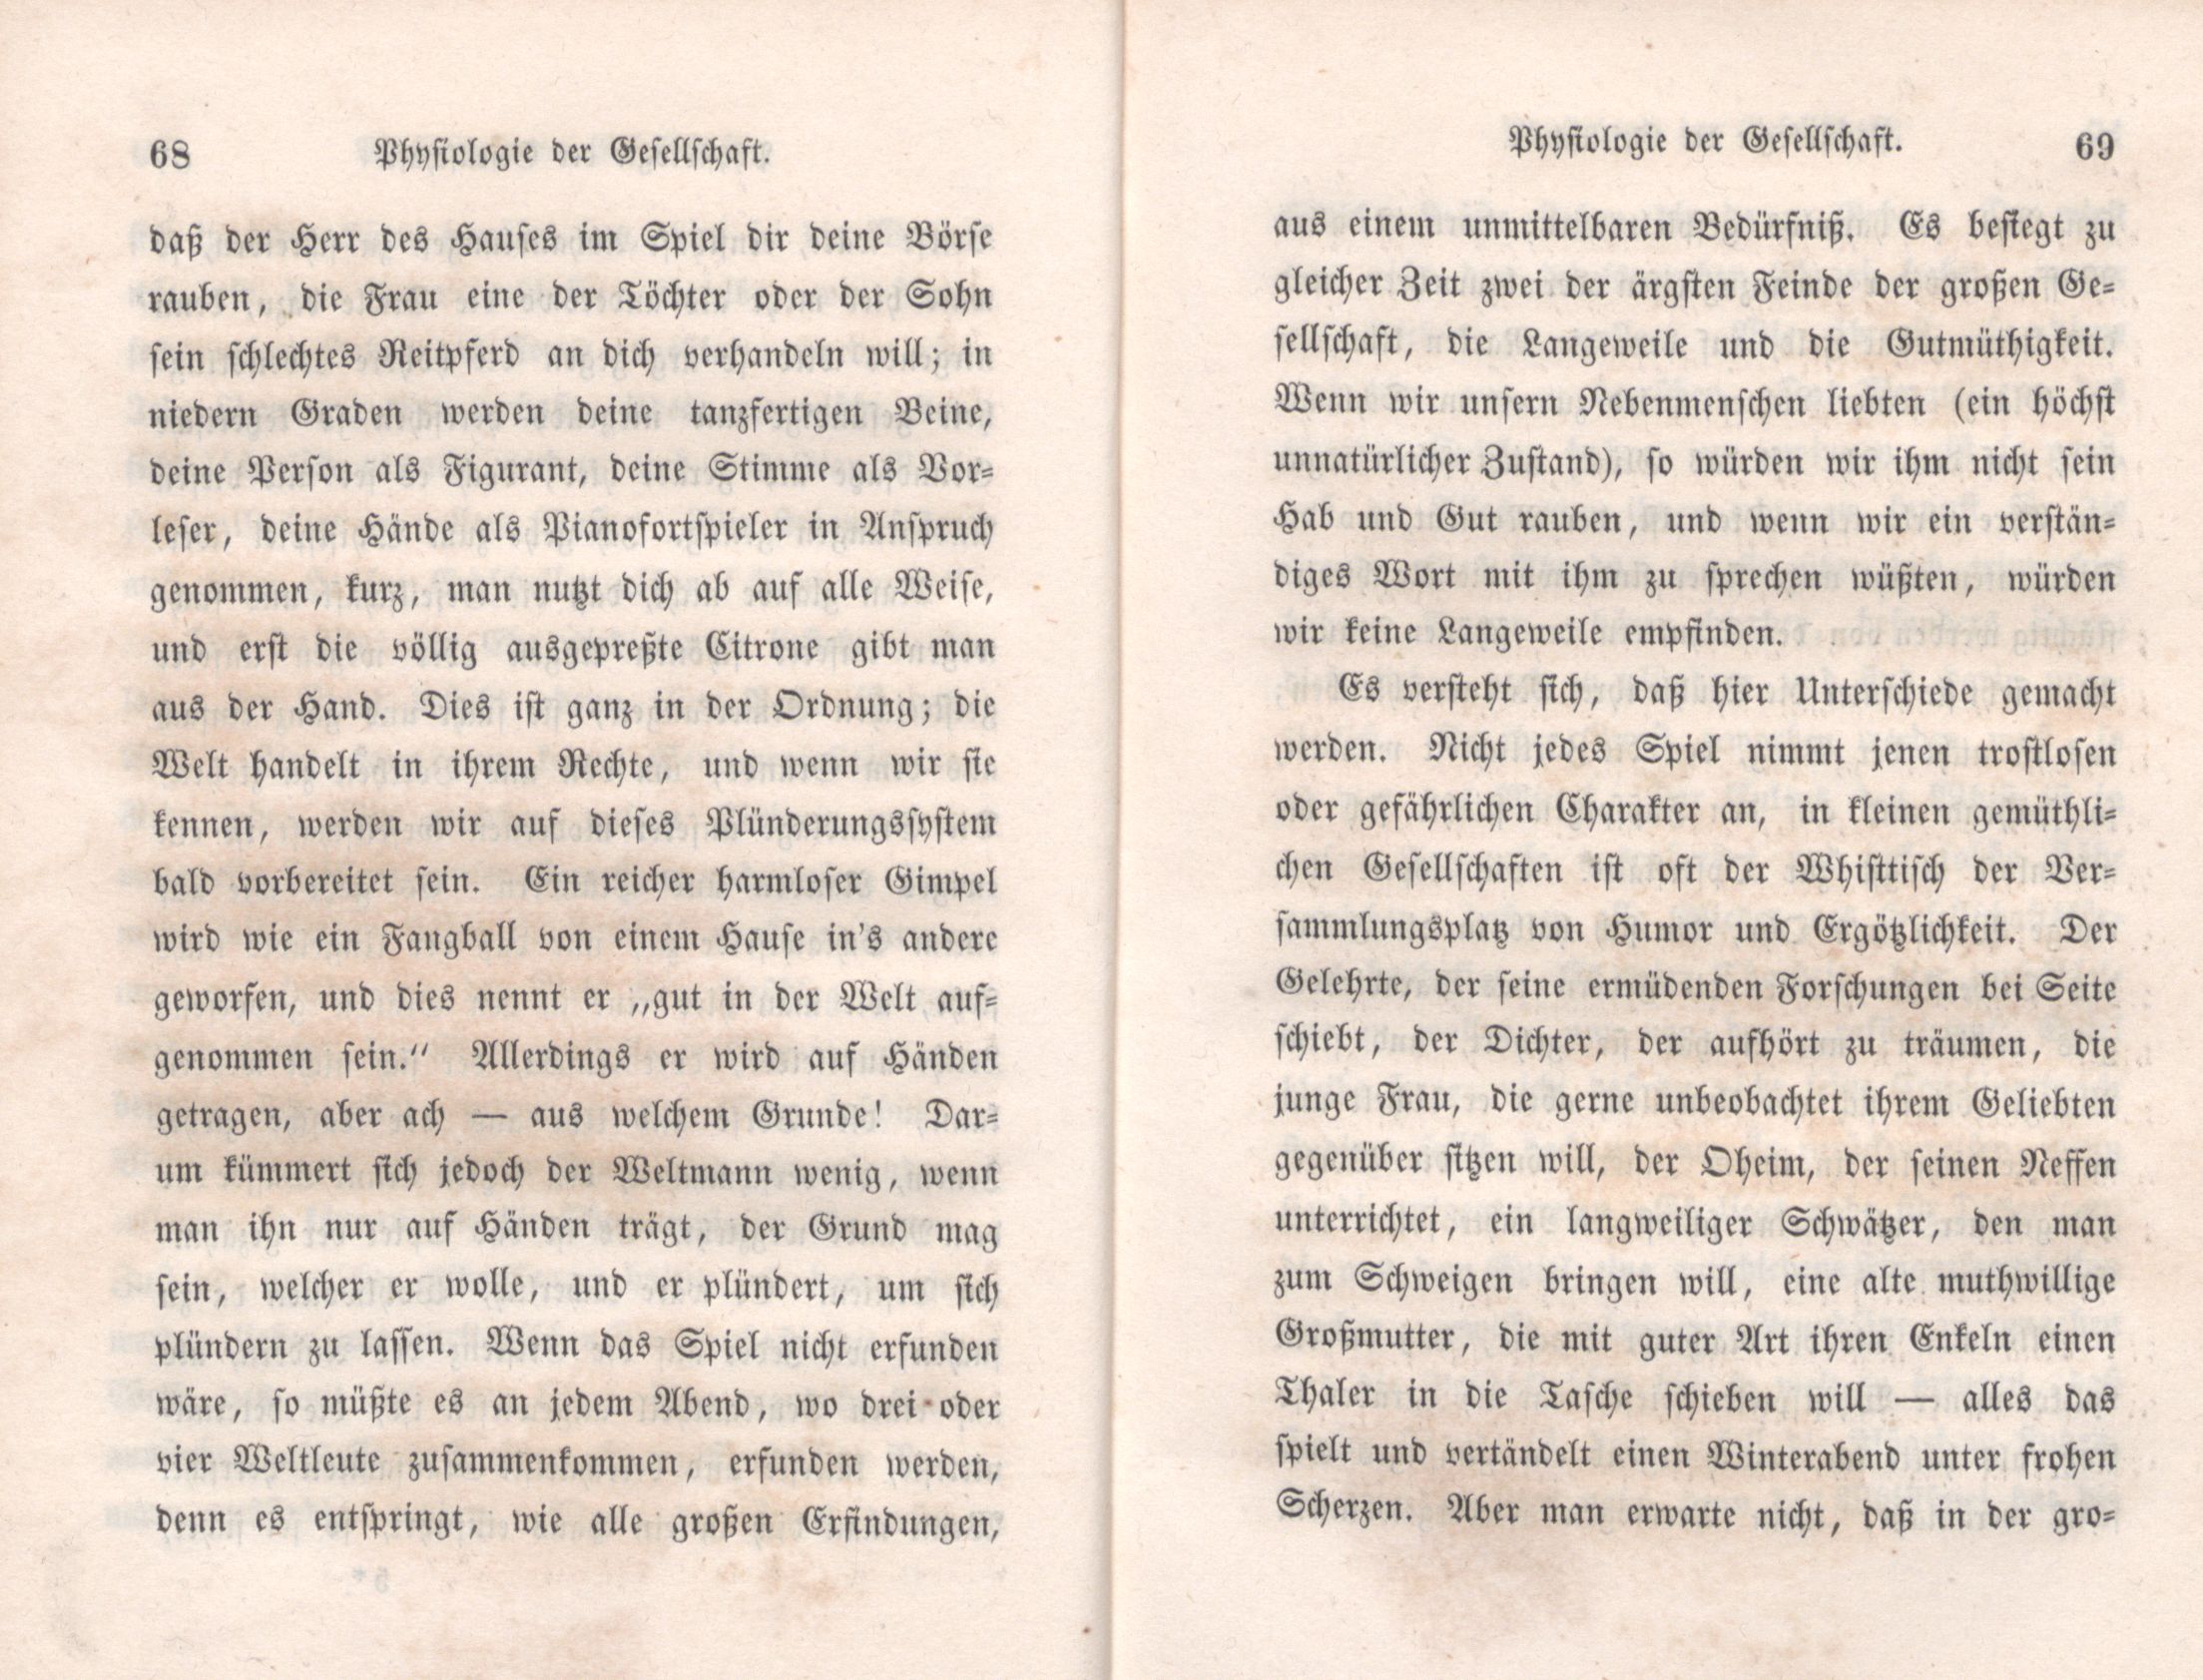 Physiologie der Gesellschaft (1847) | 35. (68-69) Main body of text